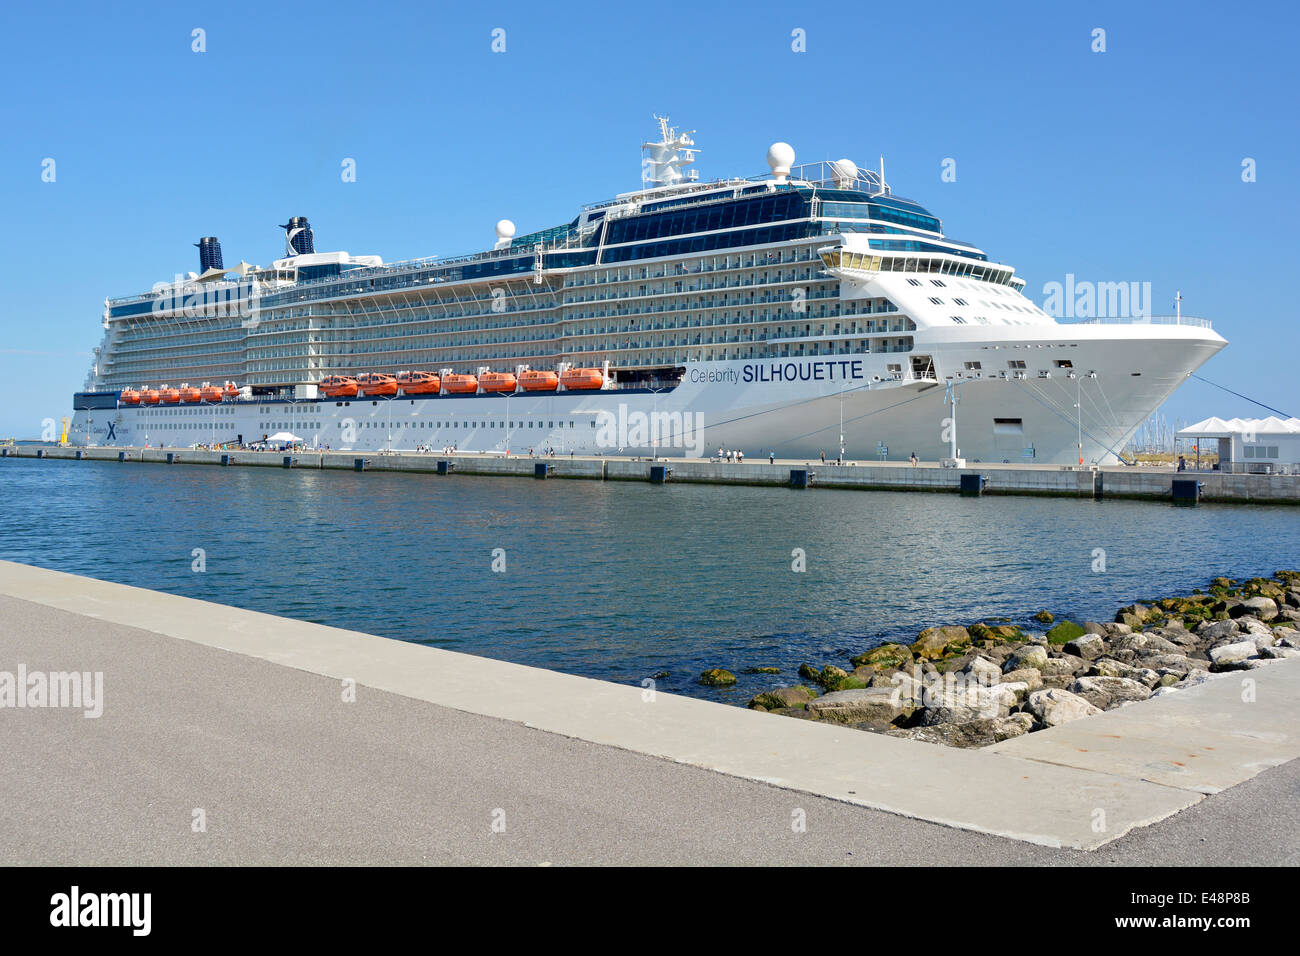 Moderne Celebrity Cruises Silhouette Kreuzfahrtschiff Linienschiff im italienischen Hafen Corsini Ravenna Cruise Terminal an der Adria Emilia Romagna Italien Stockfoto